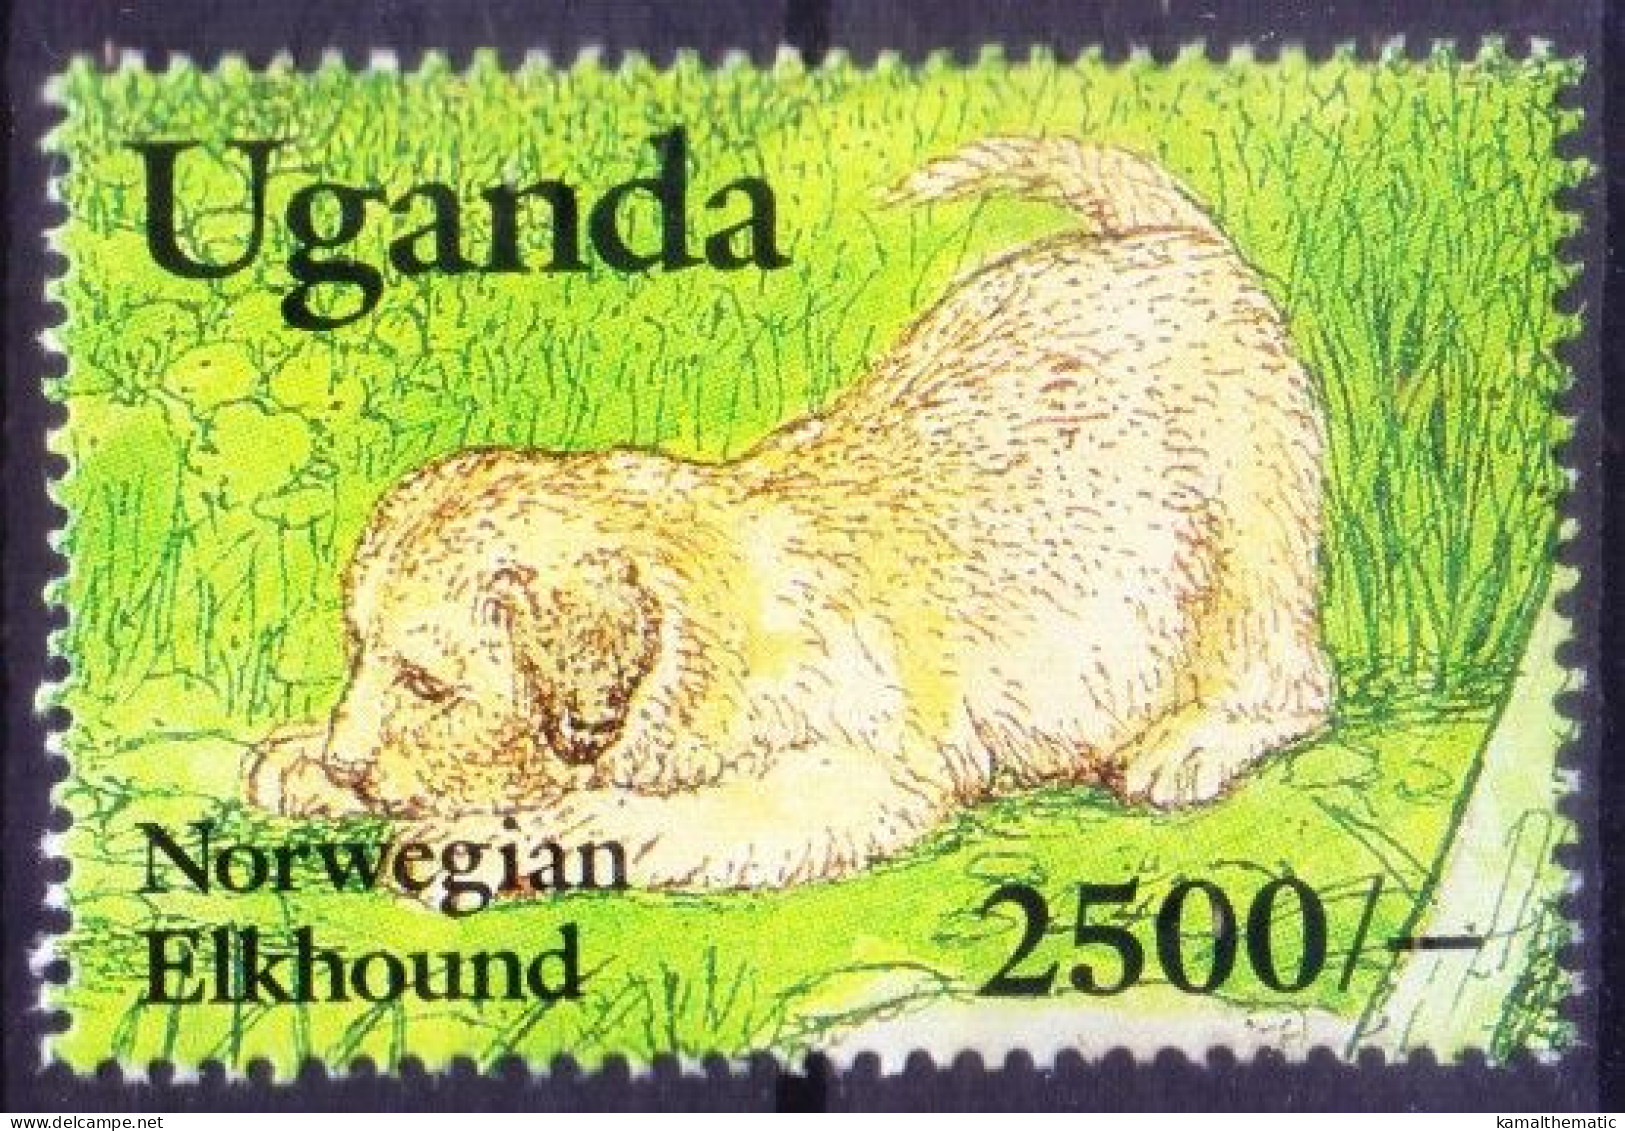 Uganda 1993 Mint No Gum, Norwegian Elkhound, Dogs, Animals - Honden